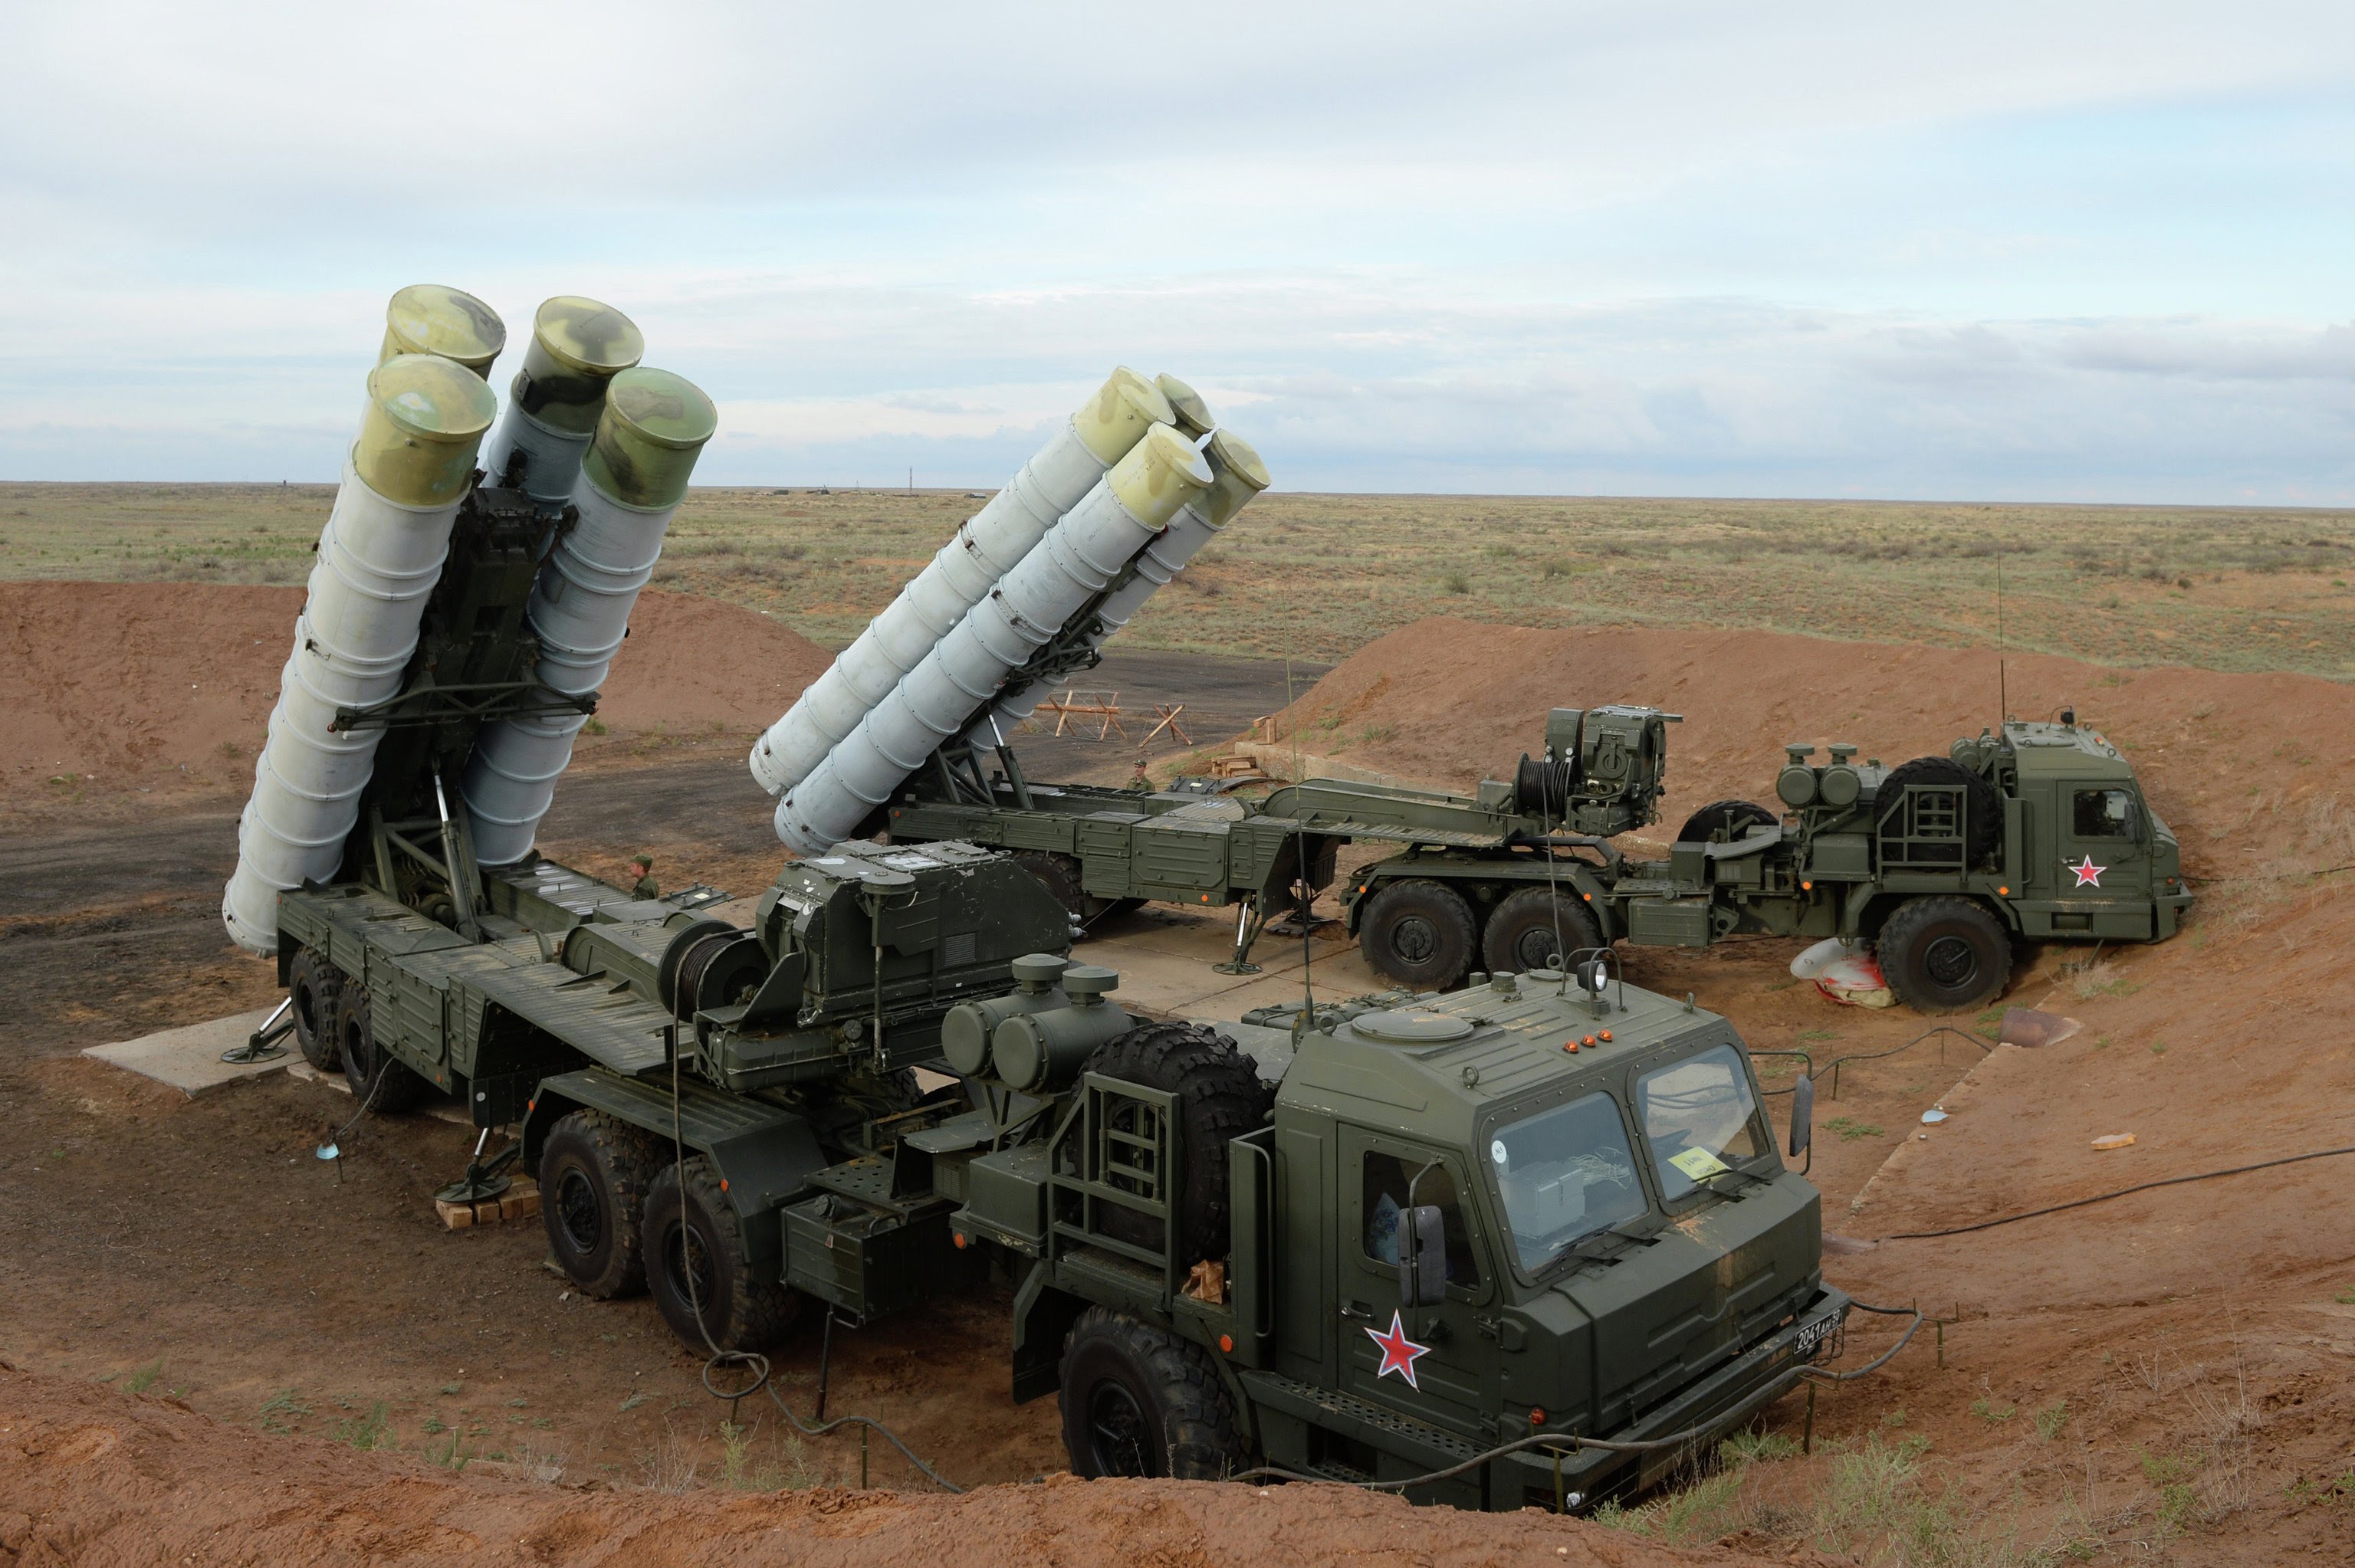 Թուրքիայի կողմից ռուսական Ս-400 համակարգերը գնելը խախտում է ԱՄՆ օրենքը․ սենատոր